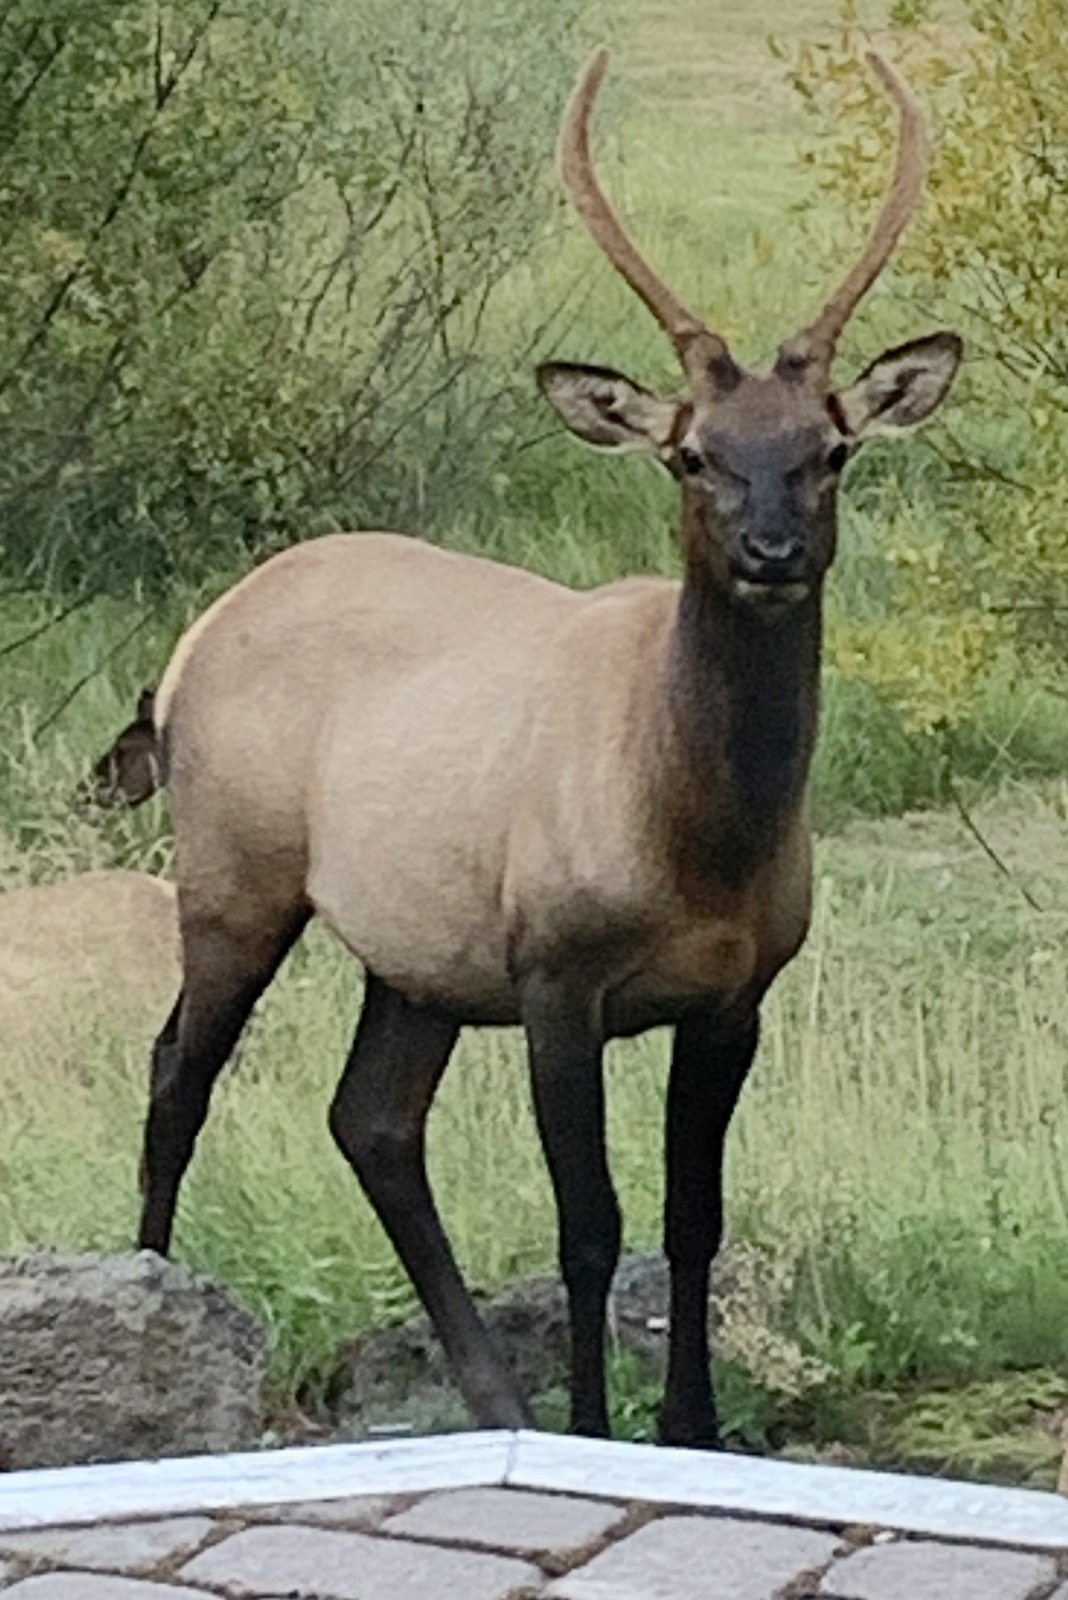 Elk off porch facing camera